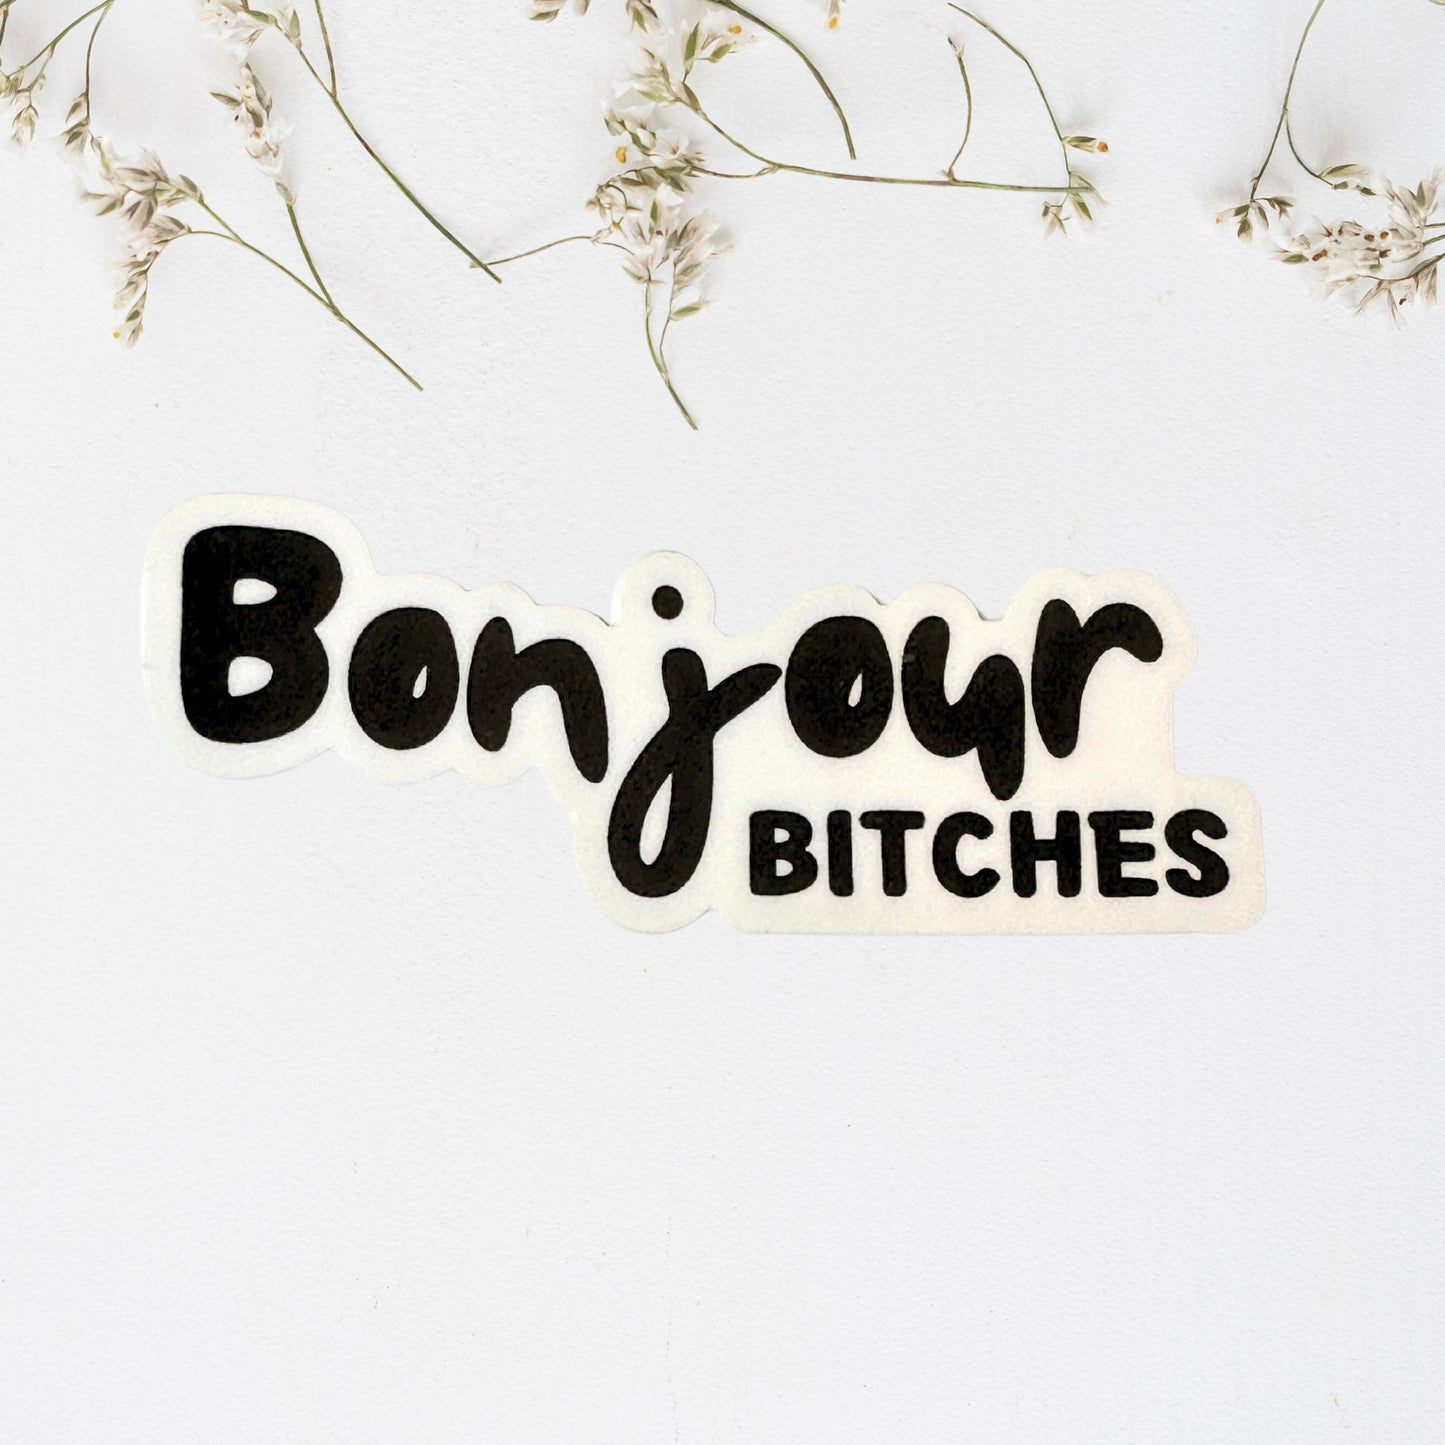 Bonjour Bitches Vinyl Sticker